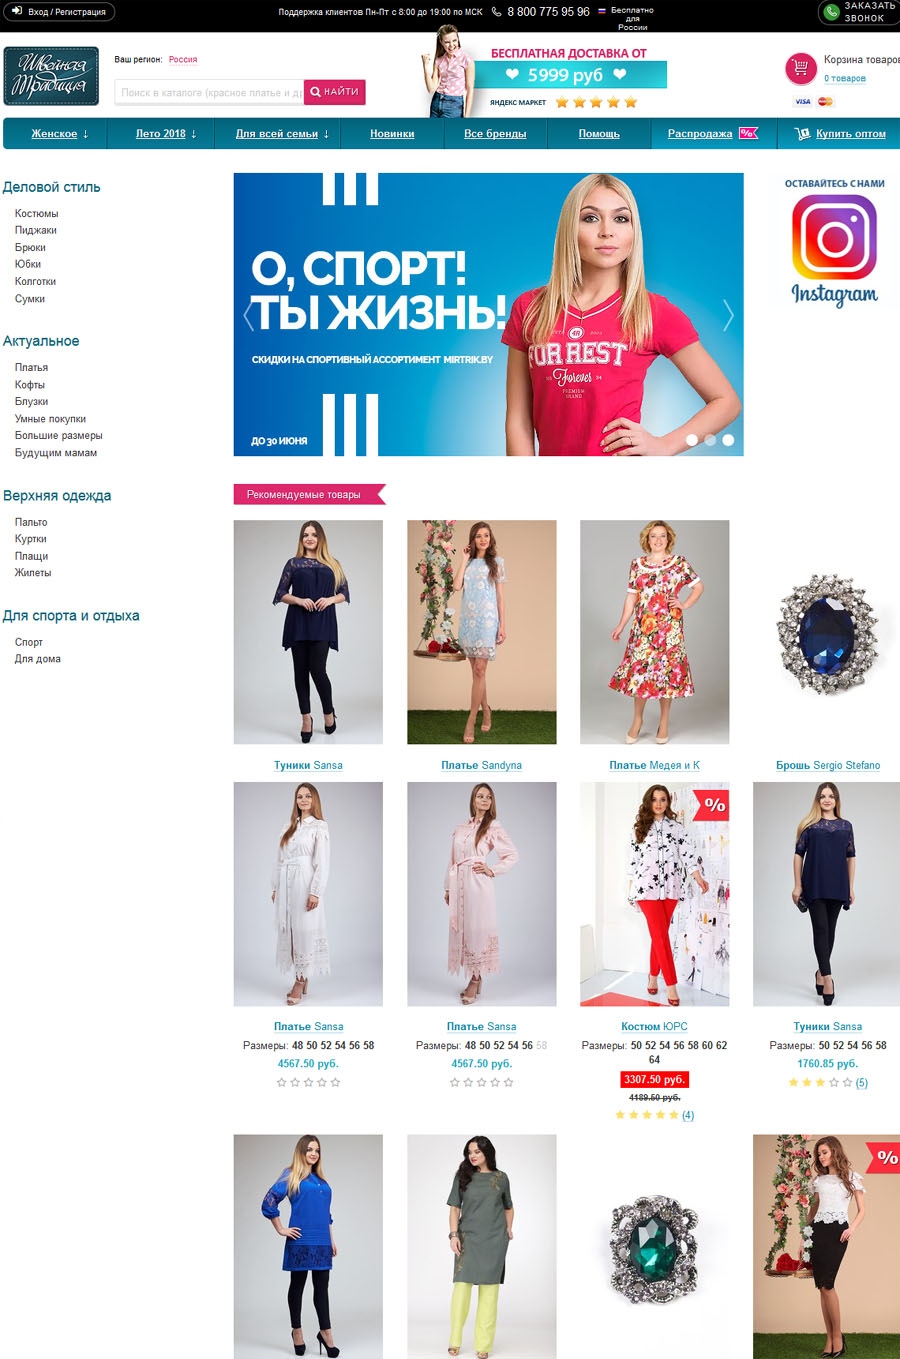 Швейная Традиция Интернет Магазин Белорусской Одежды